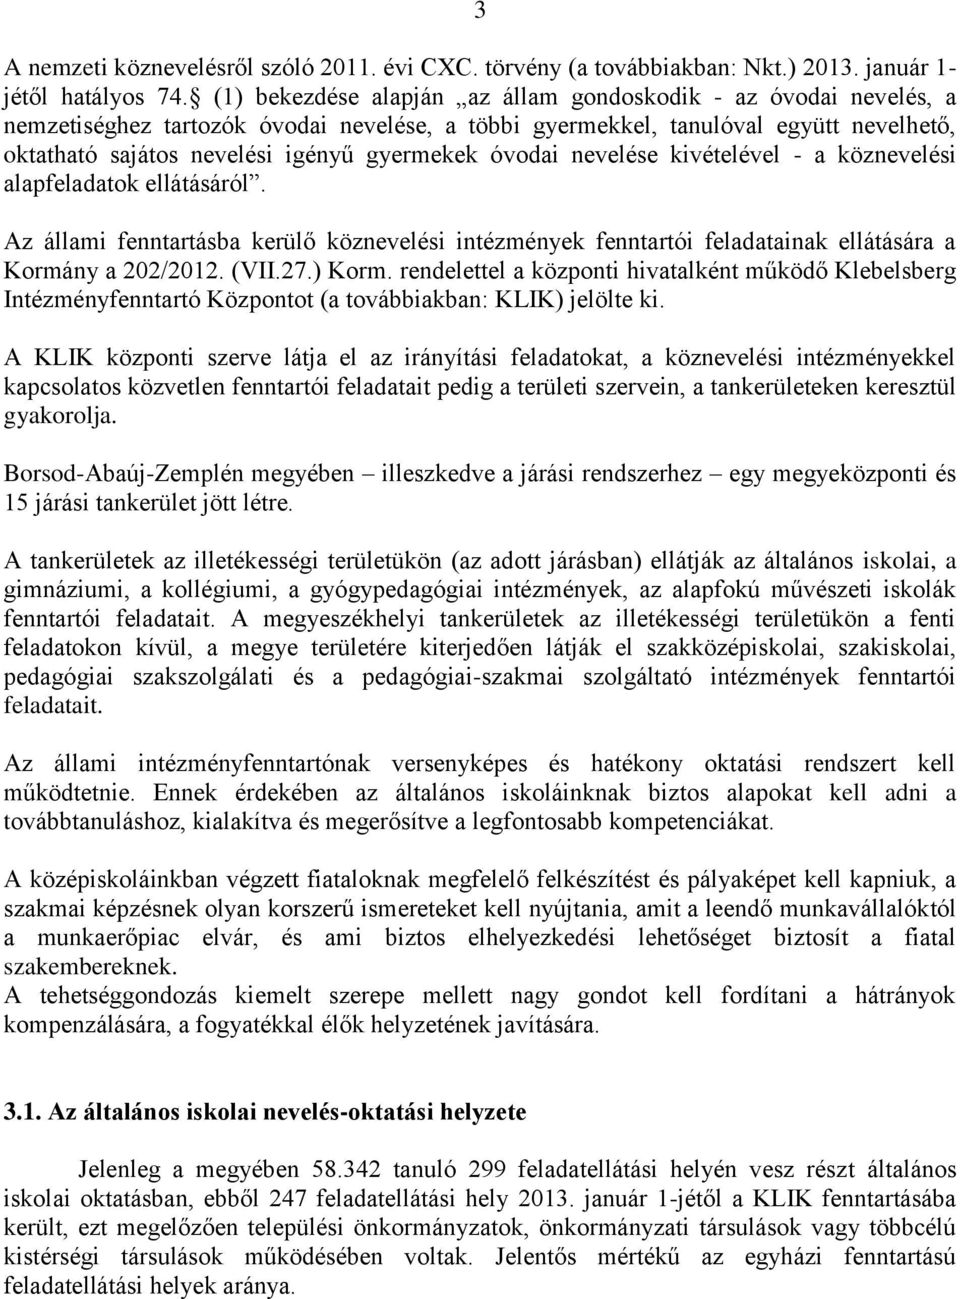 óvodai nevelése kivételével - a köznevelési alapfeladatok ellátásáról. Az állami fenntartásba kerülő köznevelési intézmények fenntartói feladatainak ellátására a Kormány a 202/2012. (VII.27.) Korm.